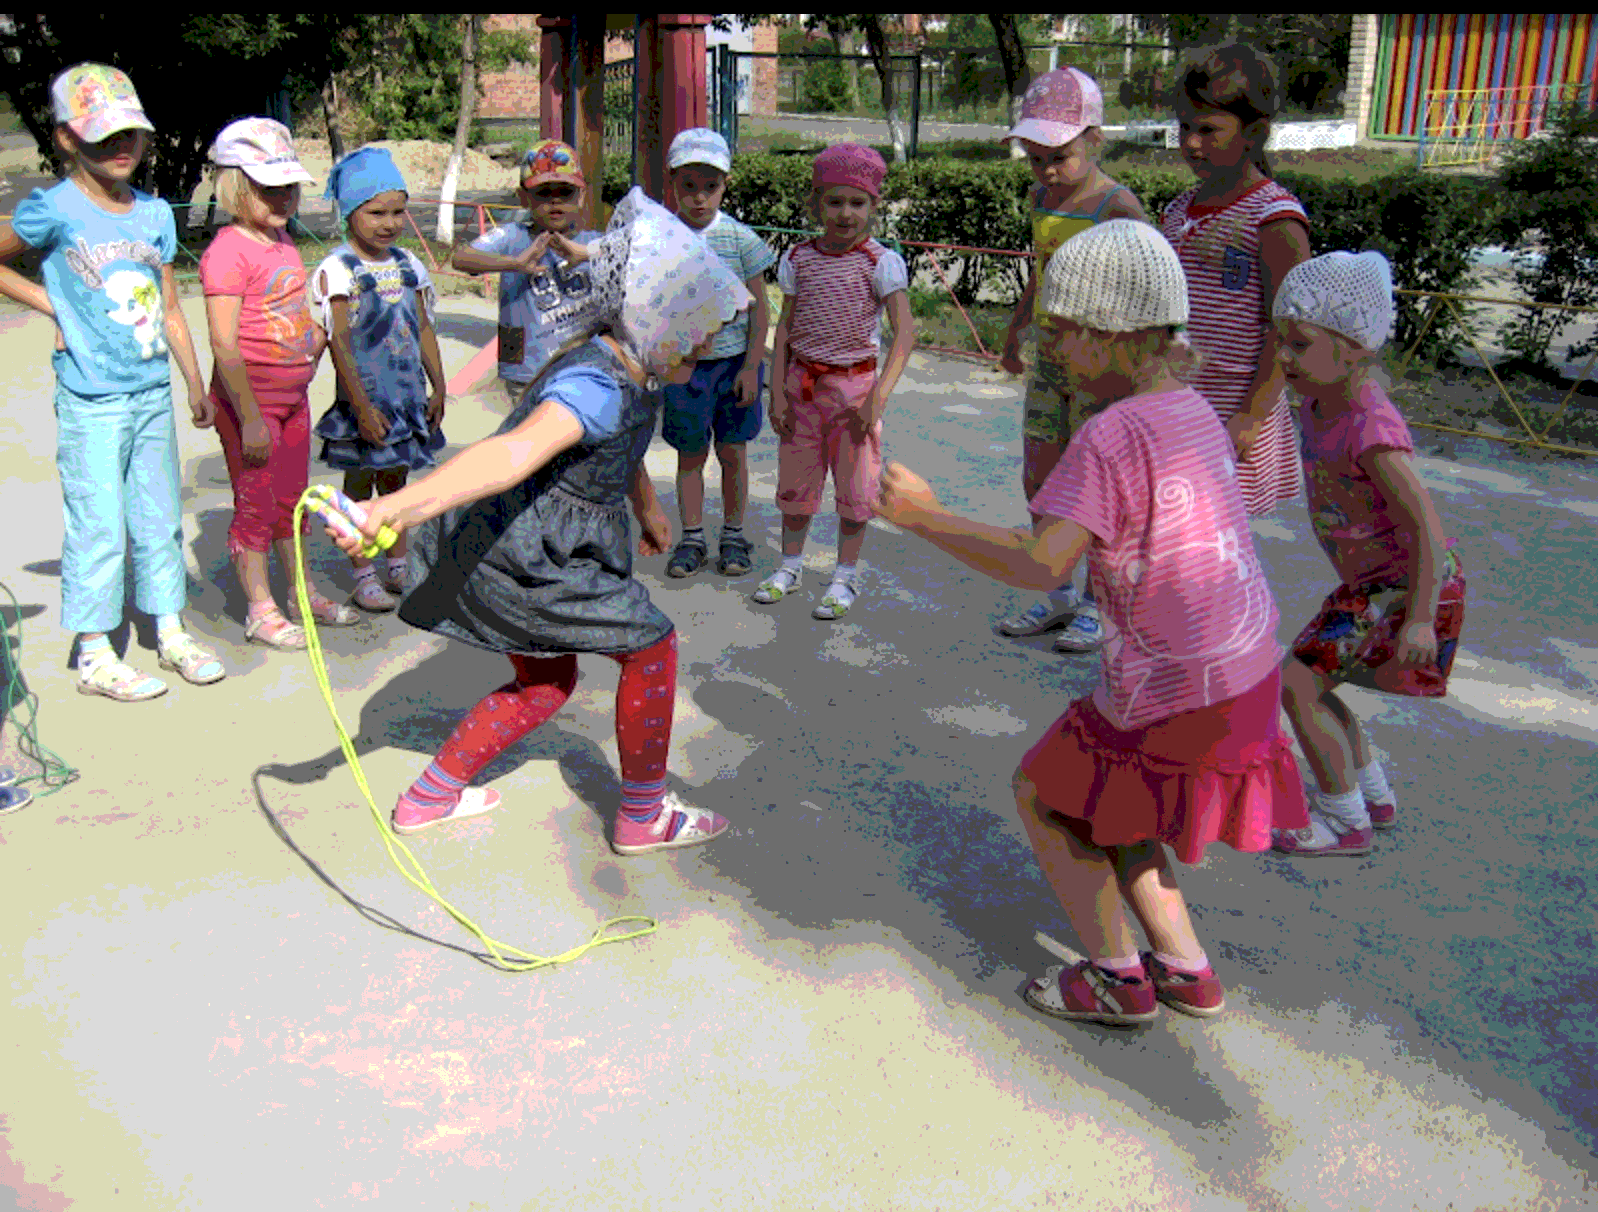 Игры на улице в детском саду